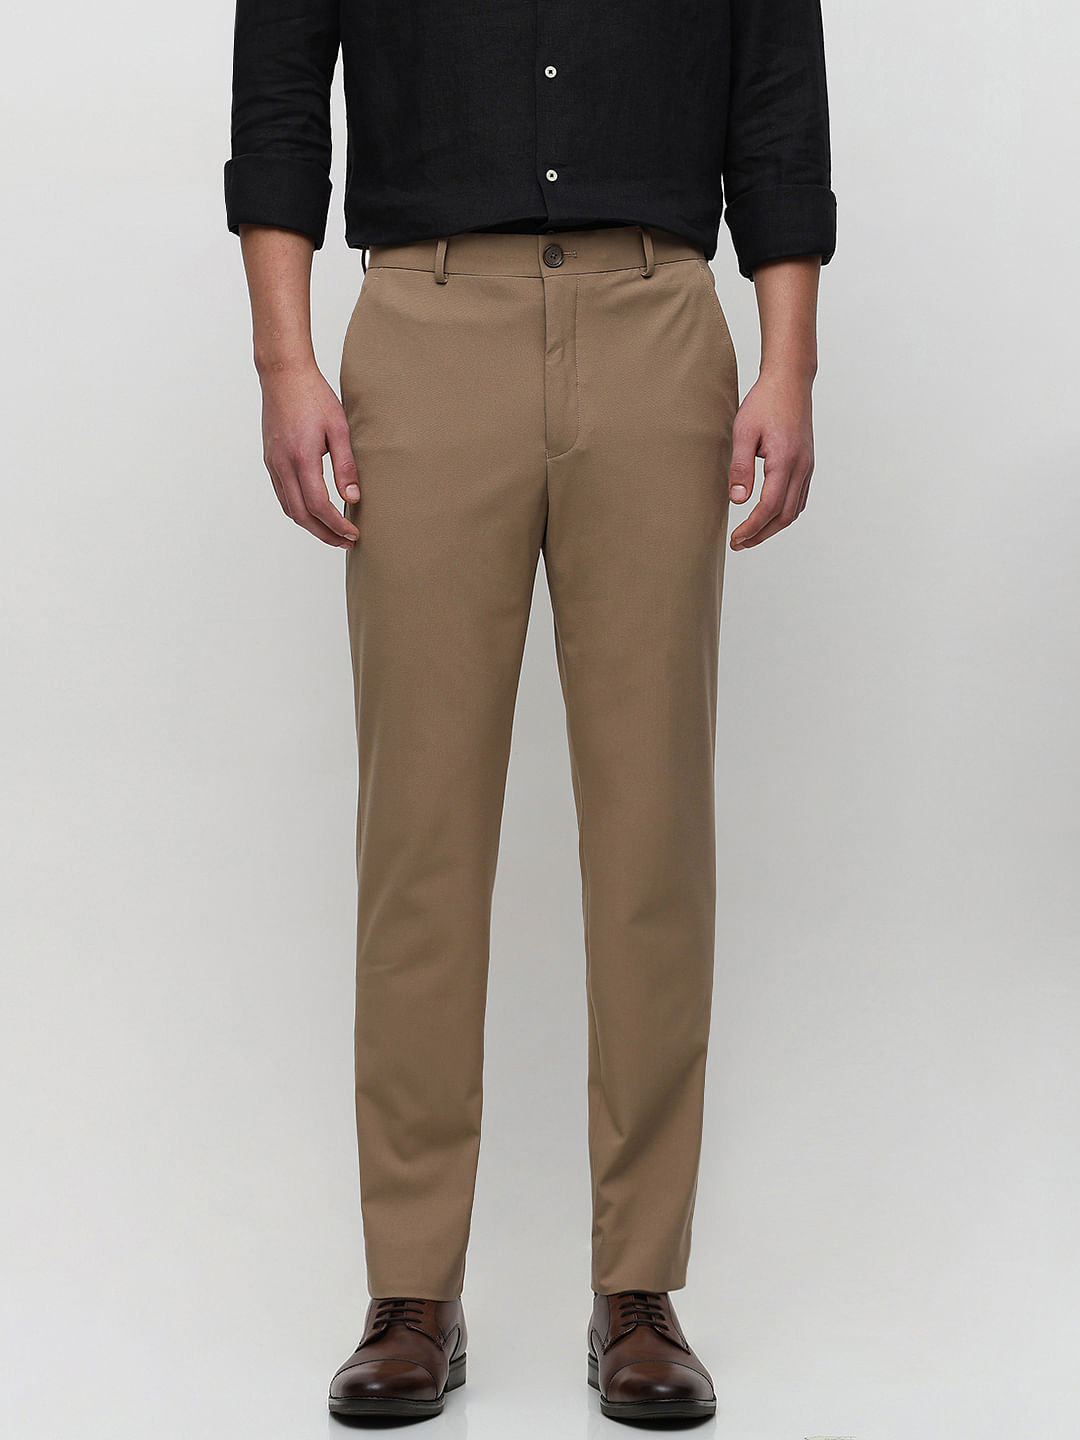 YOUNG – Black men's suit trousers – Slim fit - Shop Varteks d.d.